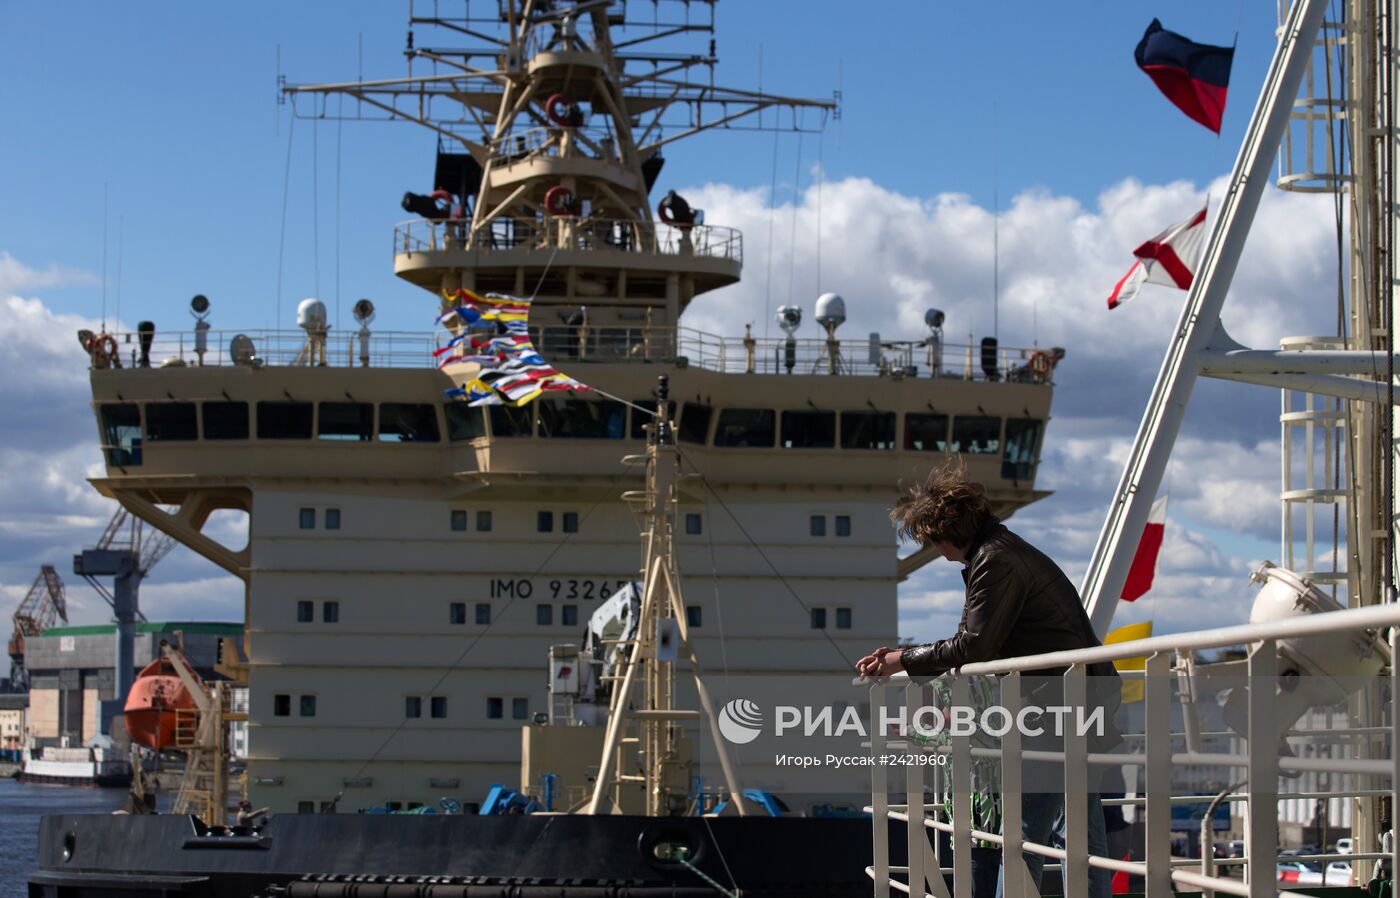 Фестиваль ледоколов, посвященный 150-летию ледокольного флота России